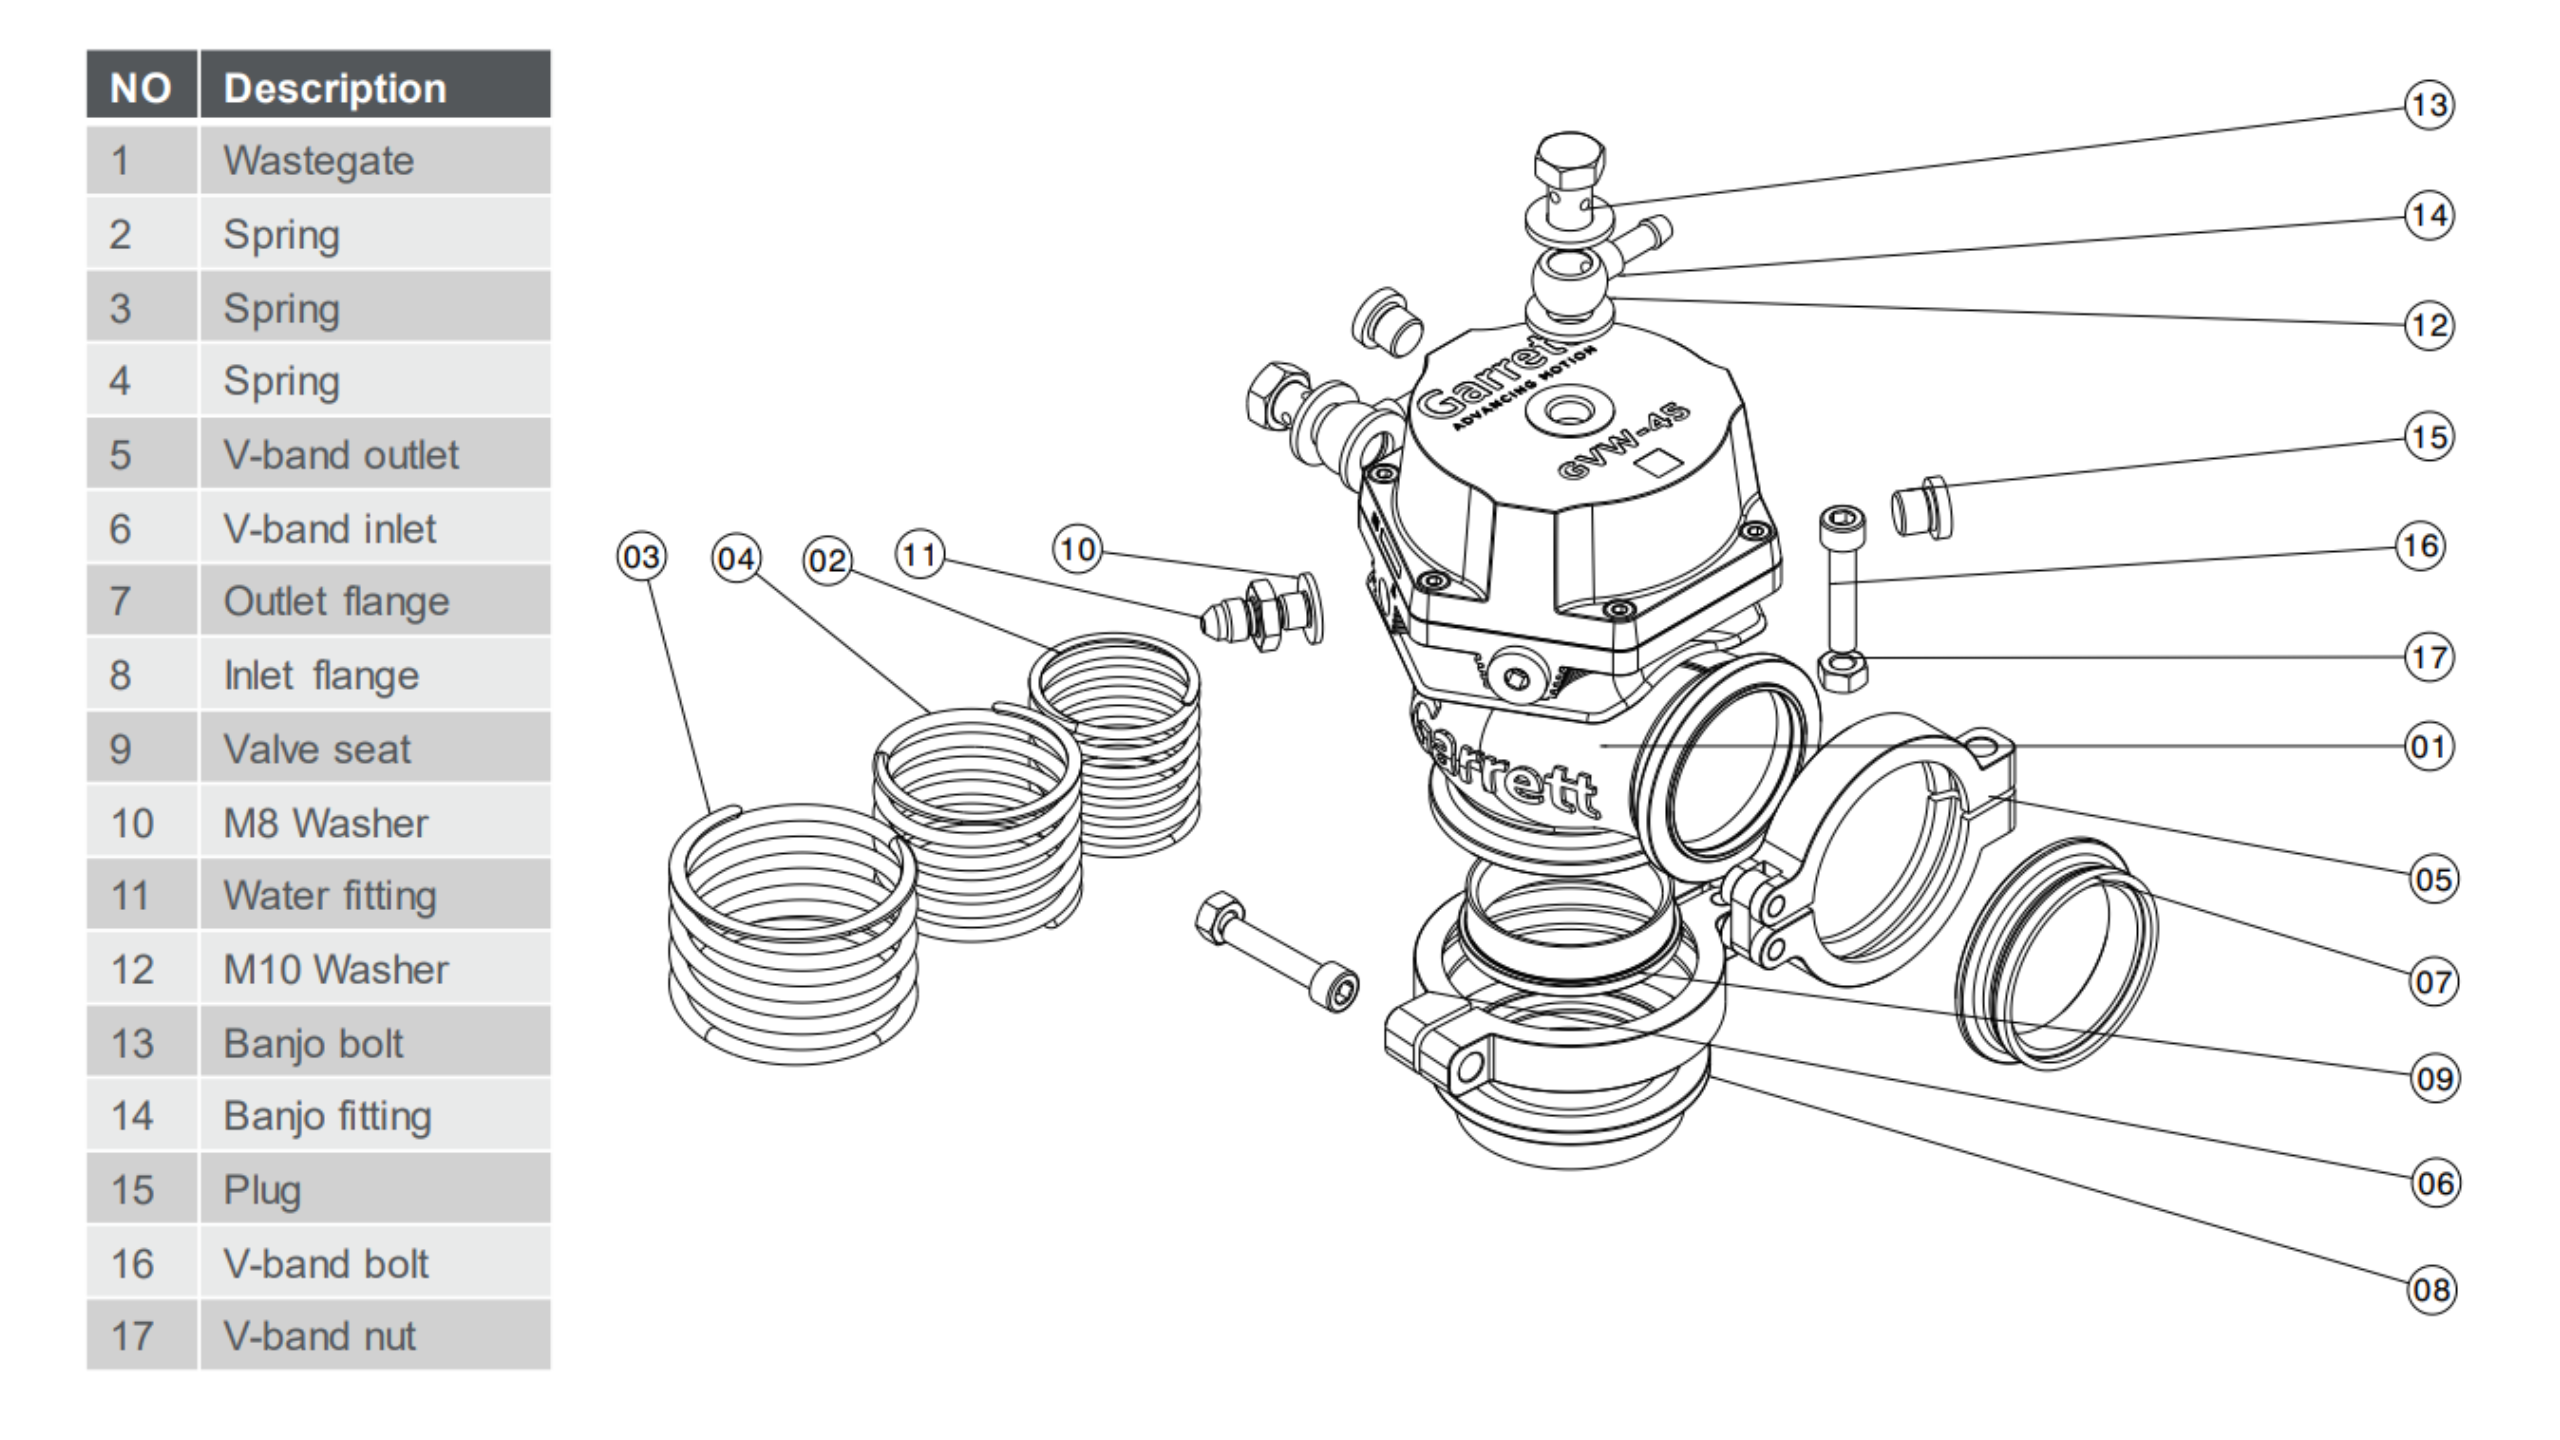 GARRETT 910478-0002 Комплект клапана/втулки 45 мм (включає клапан, втулку, ущільнювальну шайбу, кільце ущільнювача, гайку штока клапана та гніздо) для Вестгейта GVW-45 Photo-2 